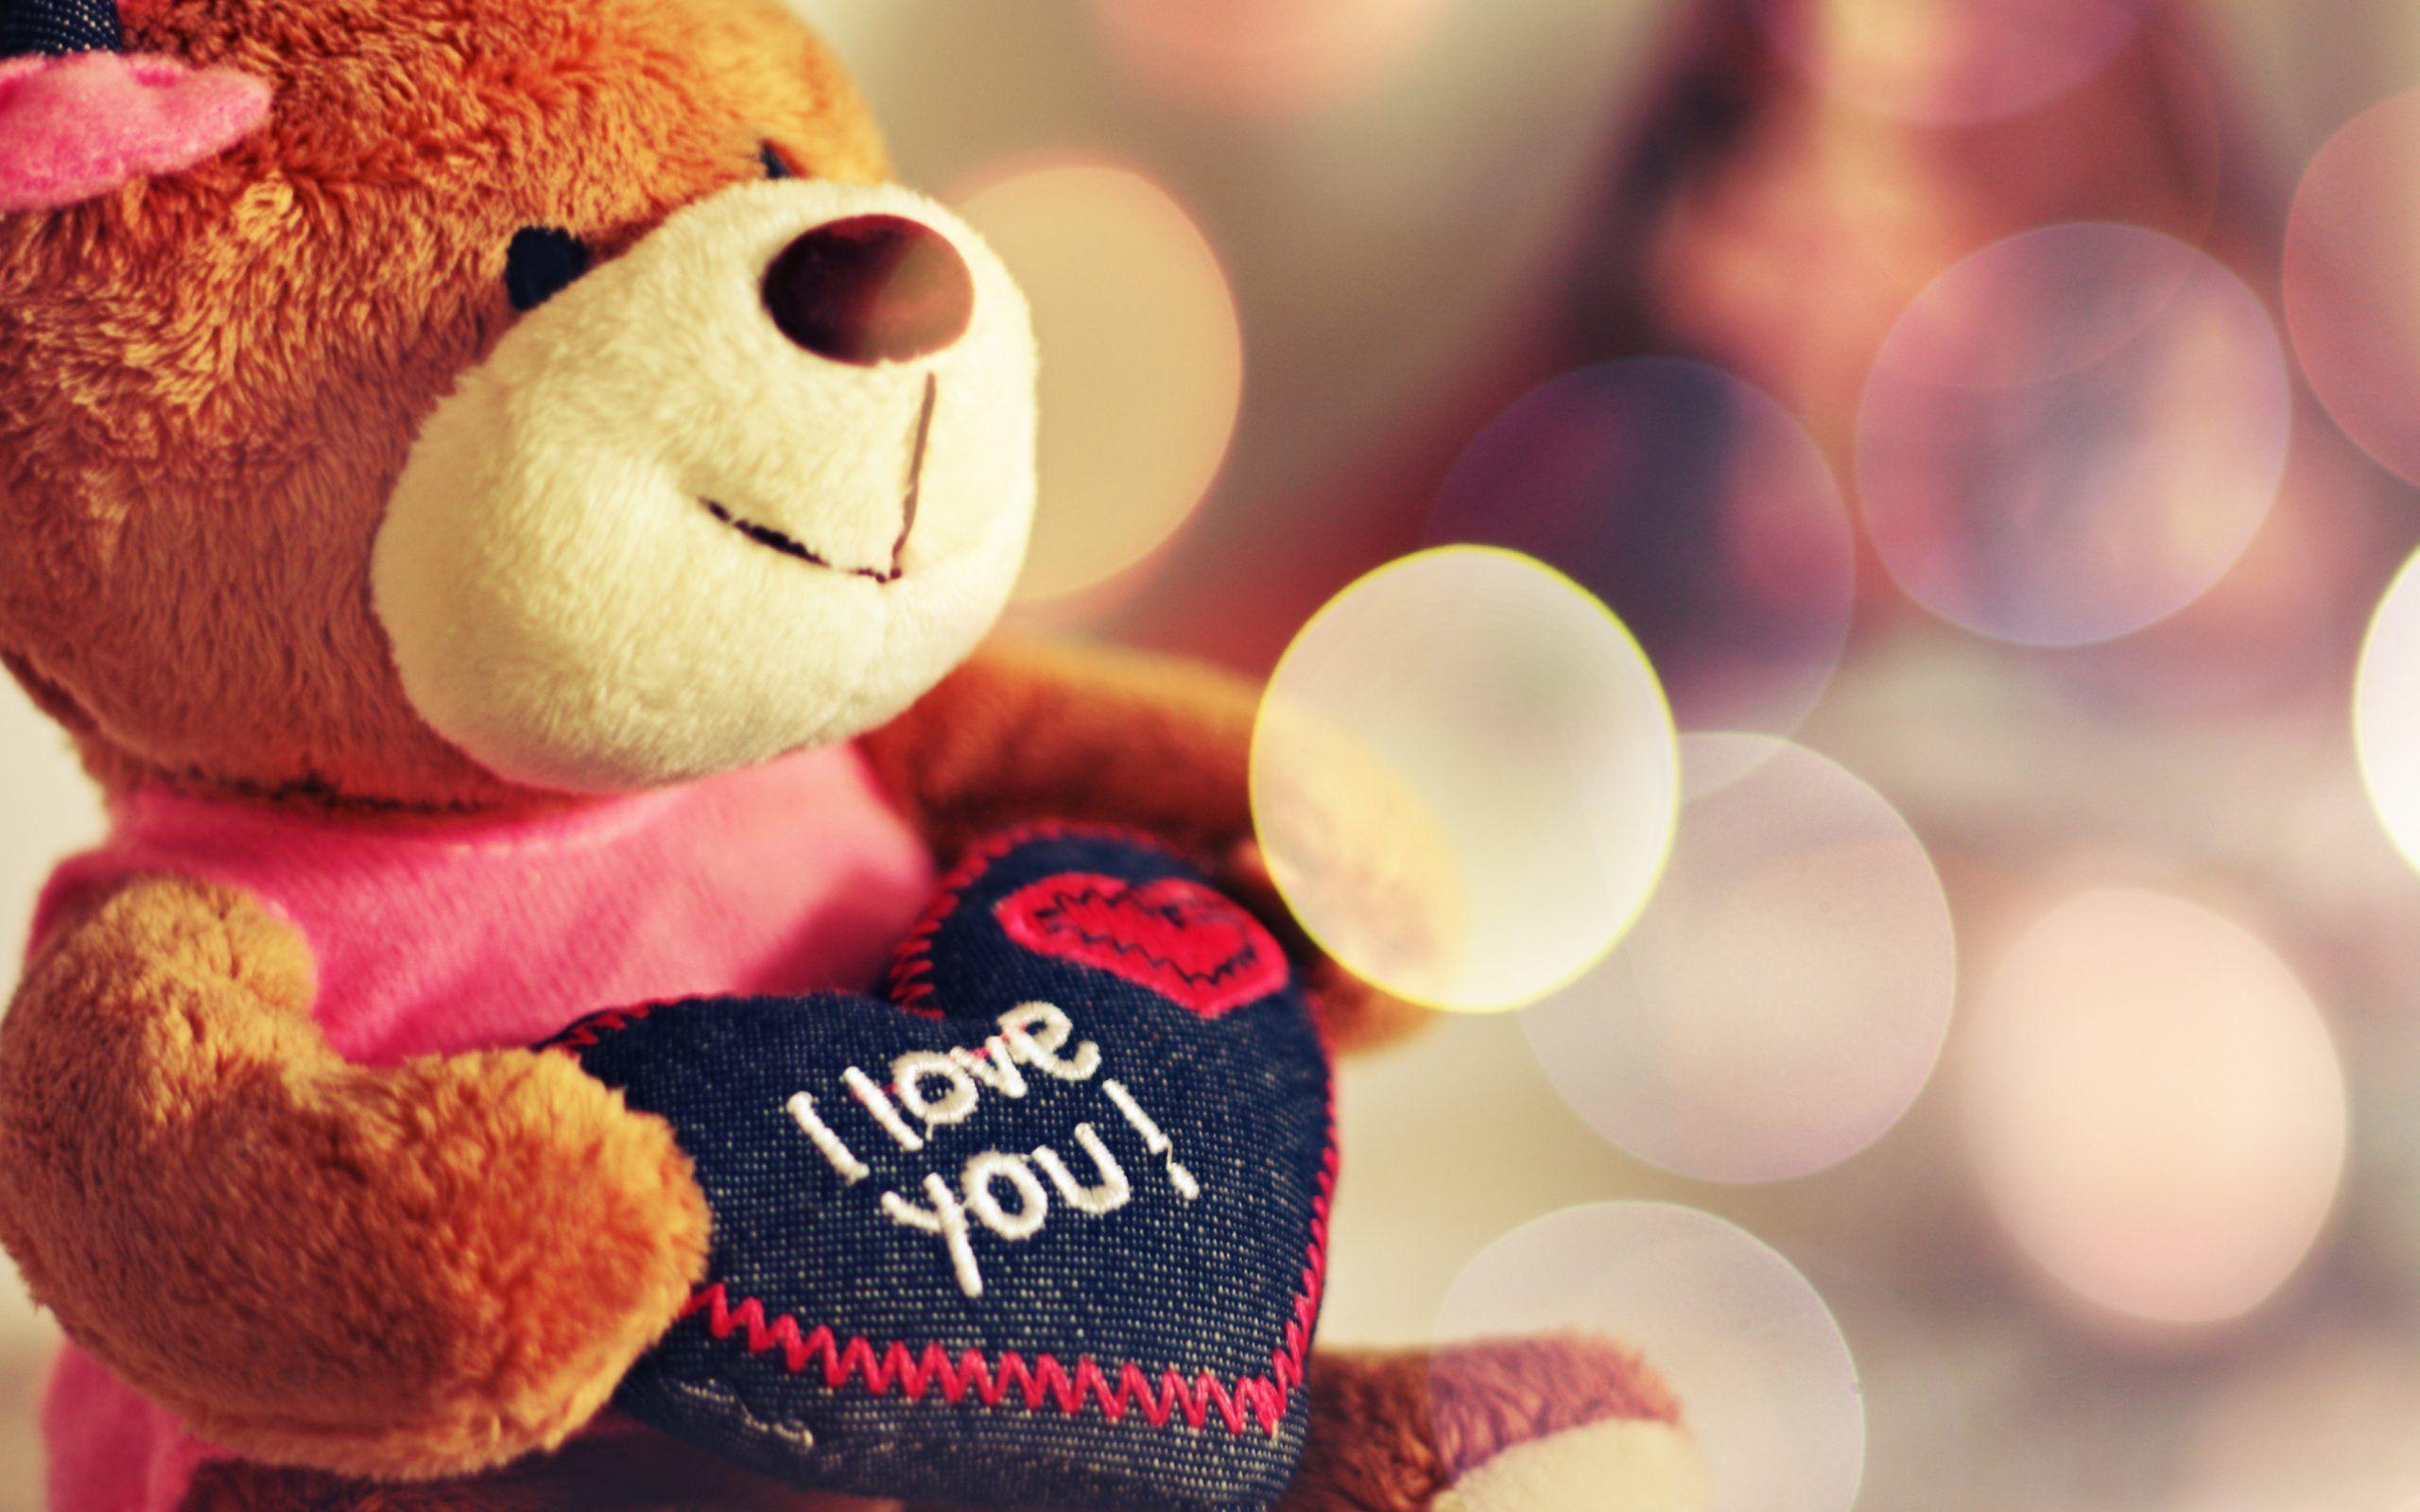 Cute Teddy Bear I Love You. Happy teddy bear day, Happy